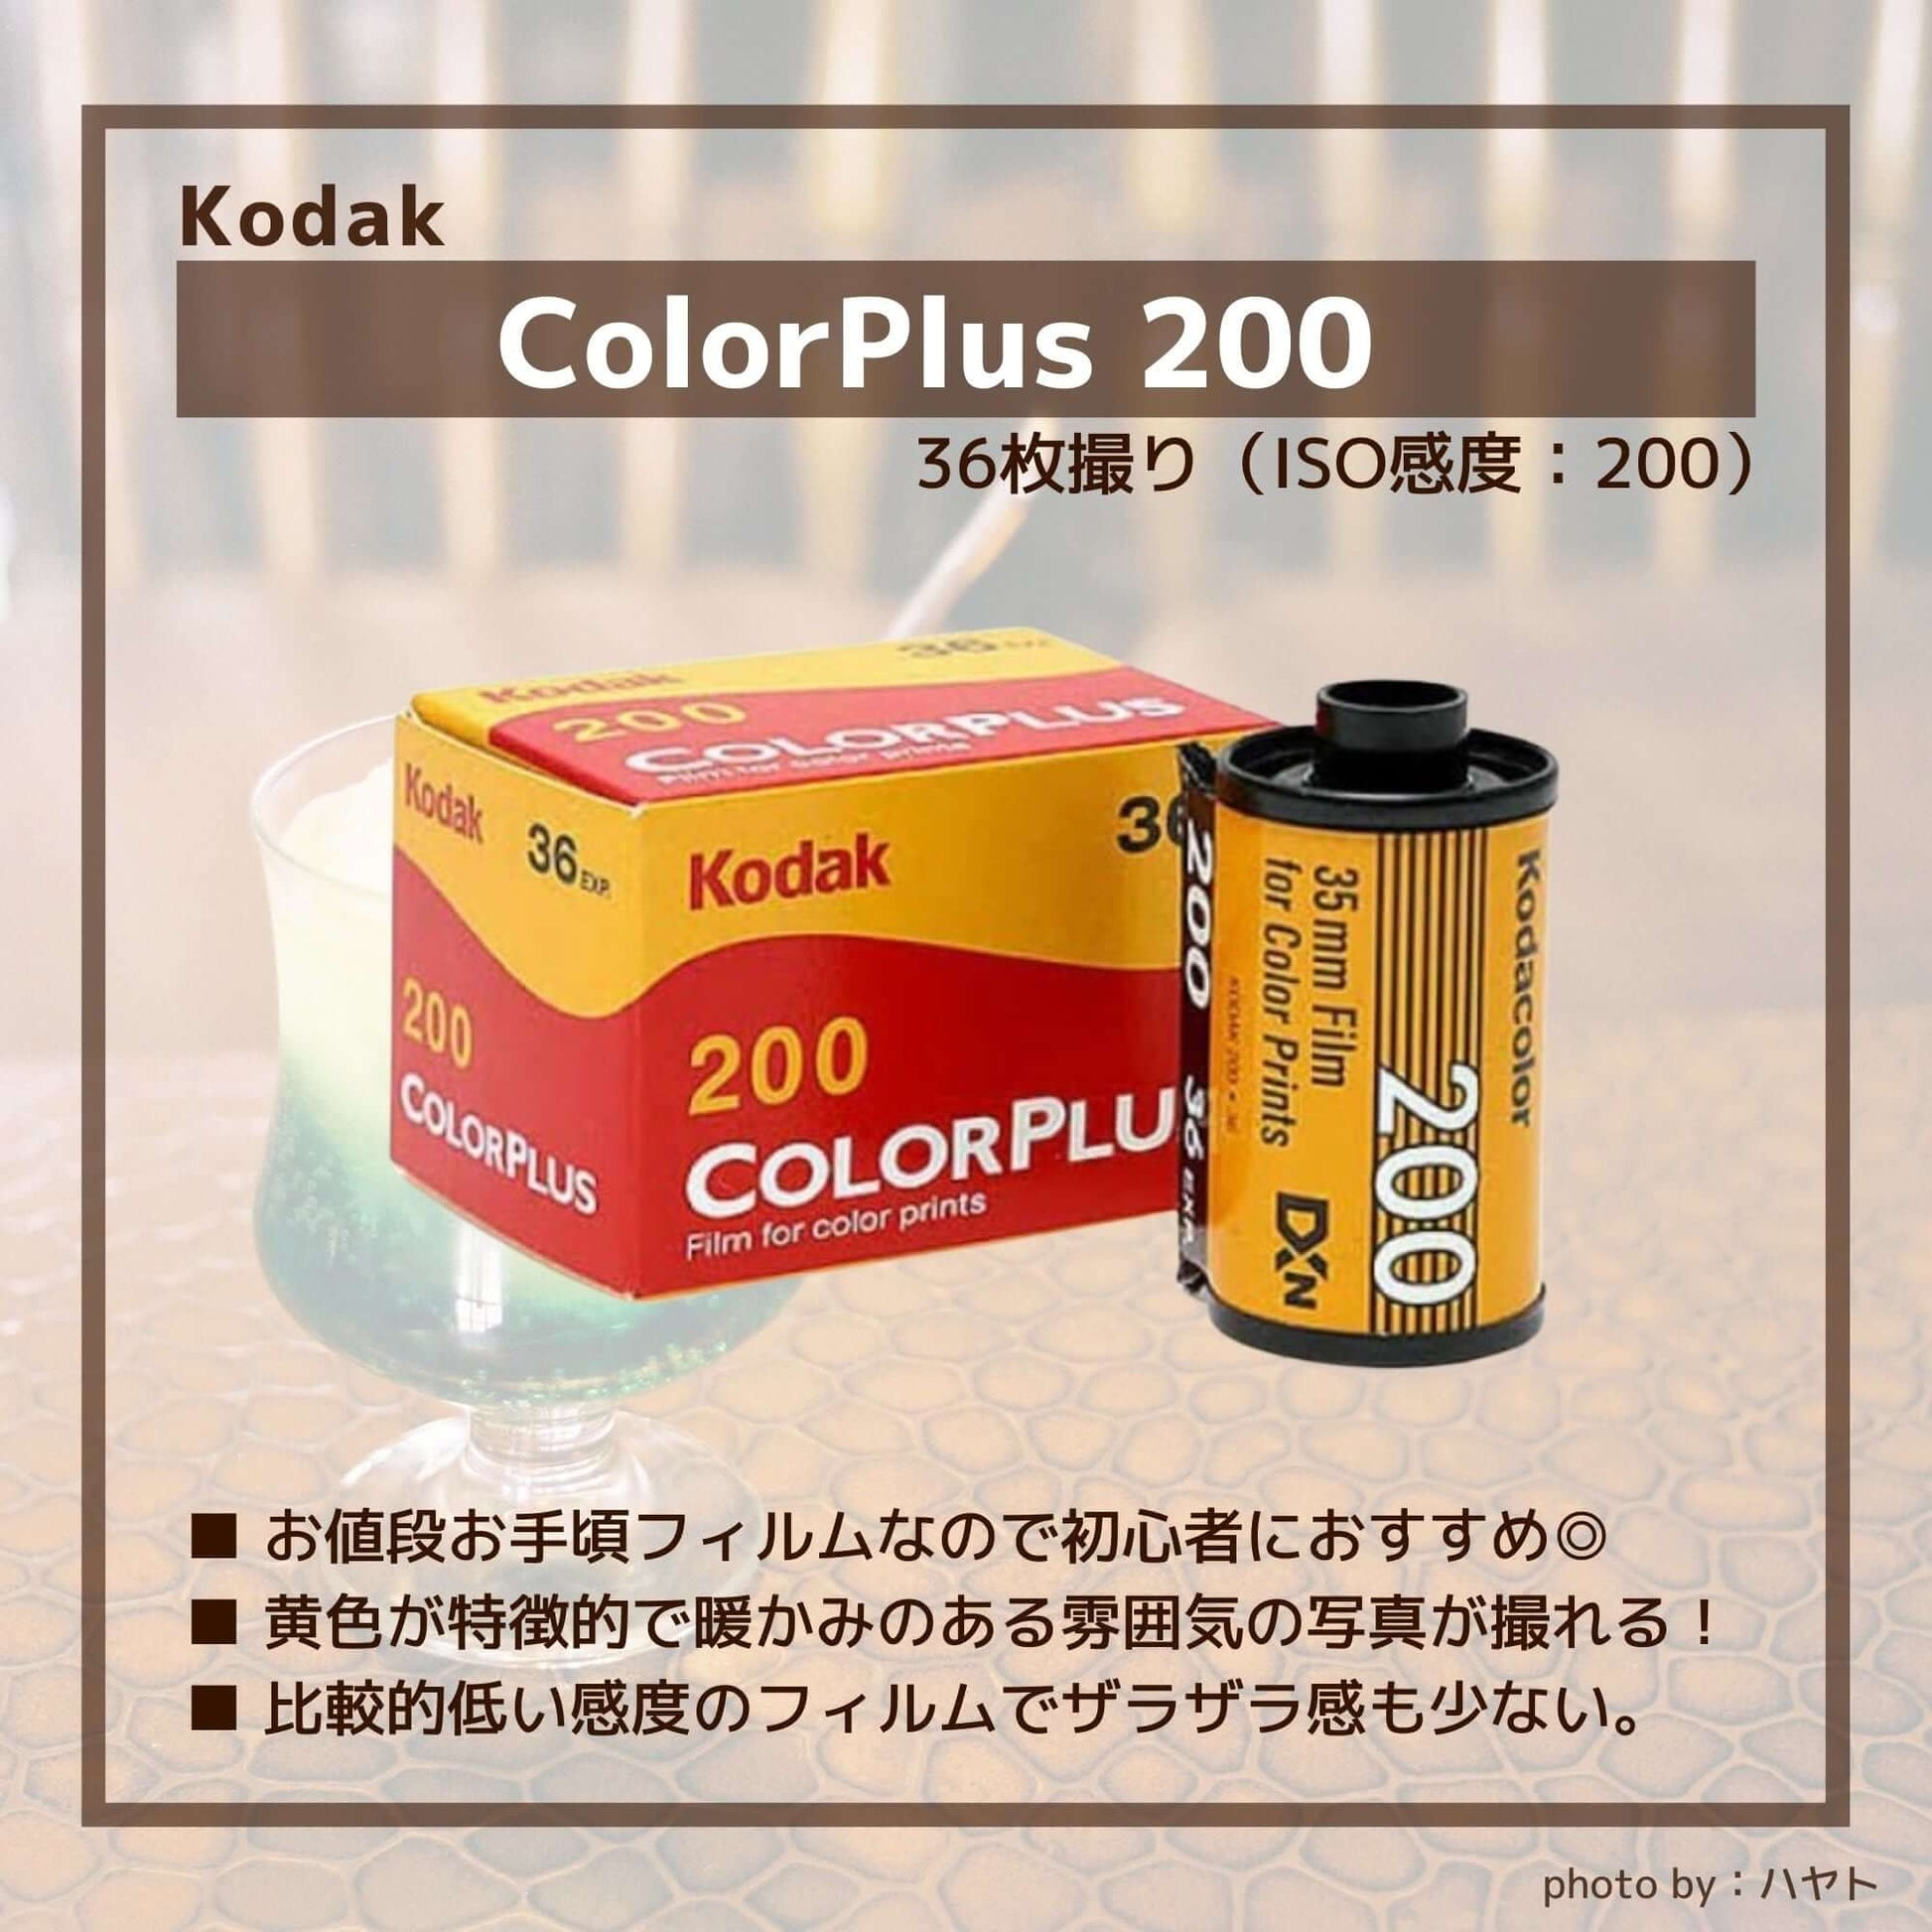 92%OFF!】 コダック カラープラス200 36枚撮り10本 KODAK colorplus